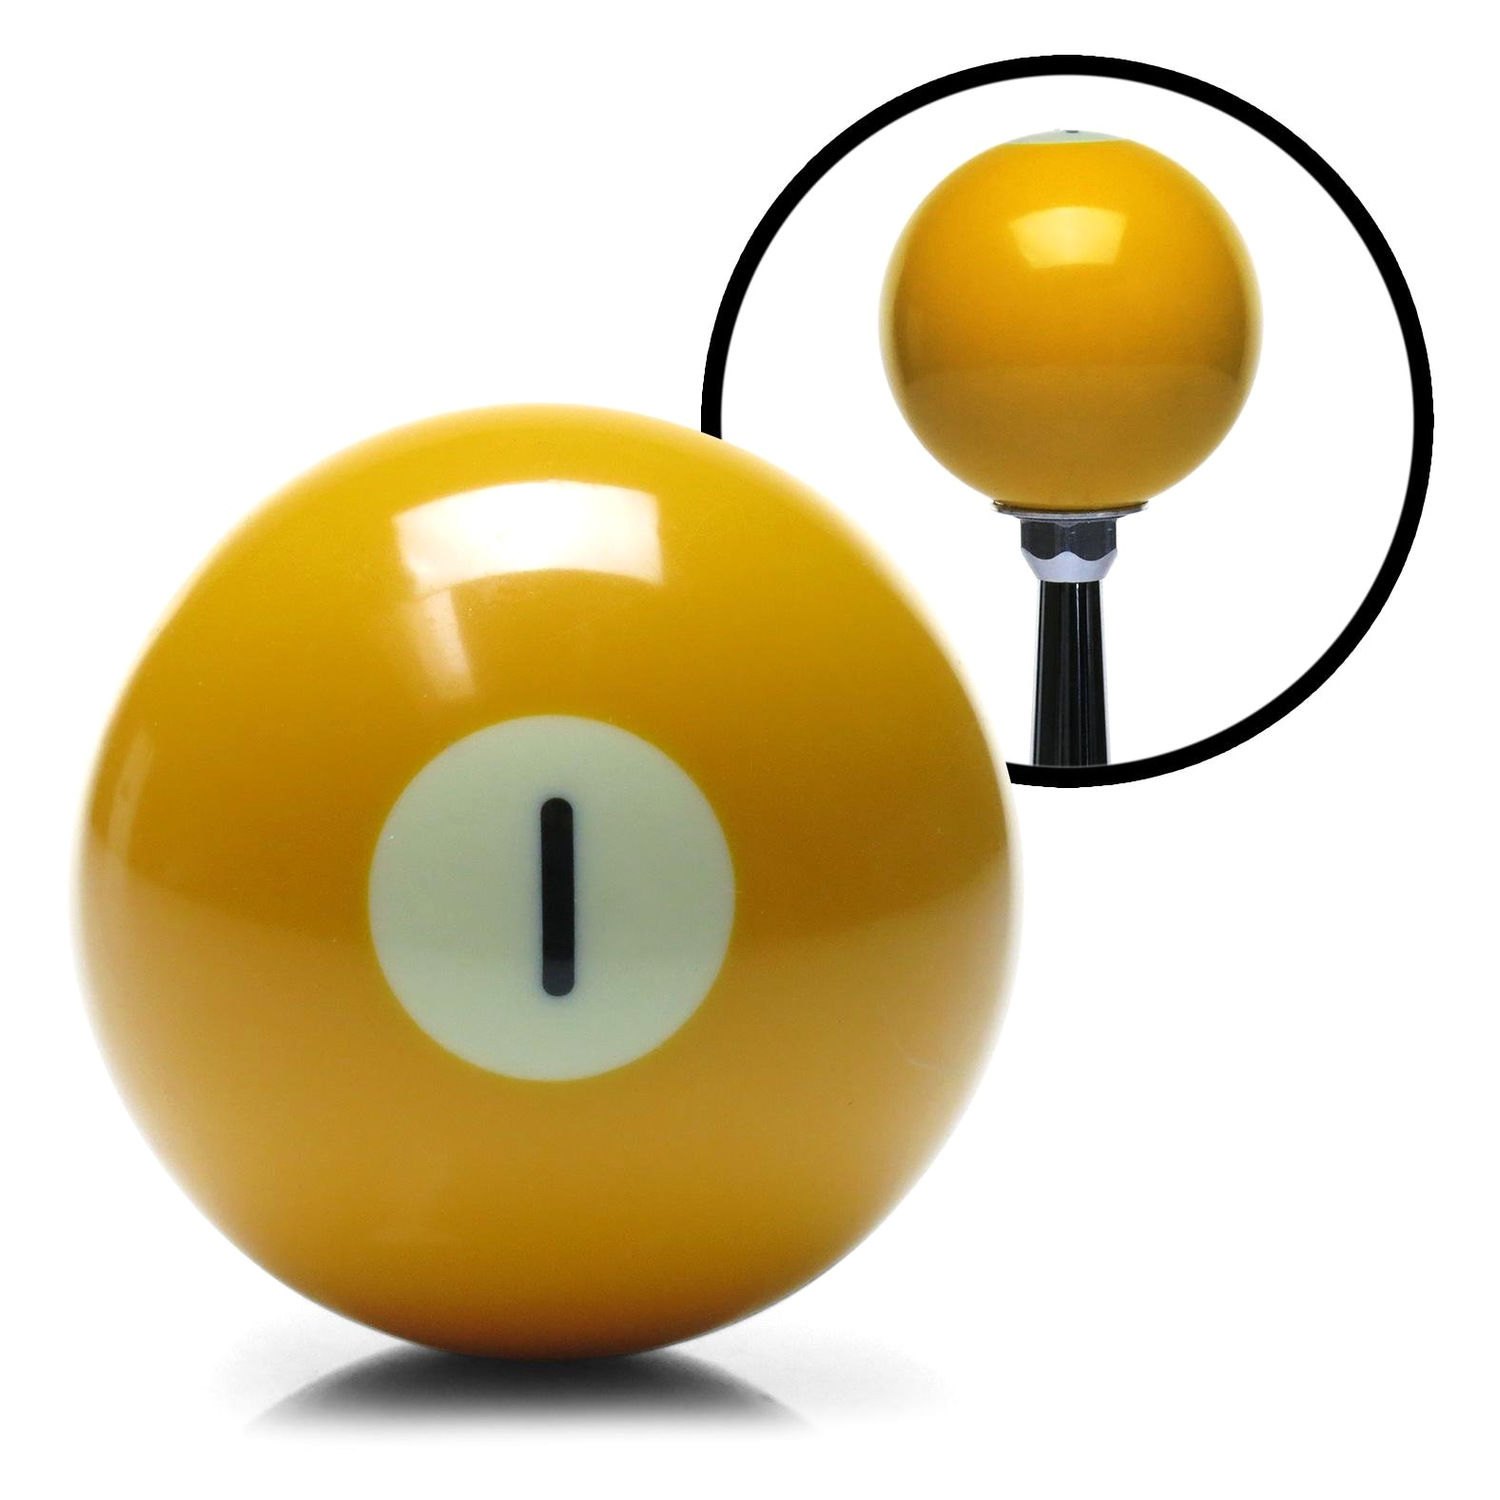 Бильярдный шар 1. Желтый бильярдный шар. Ручка бильярдный шар. Желтый бильярдный шар 8. Ручка АКПП бильярдный шар.